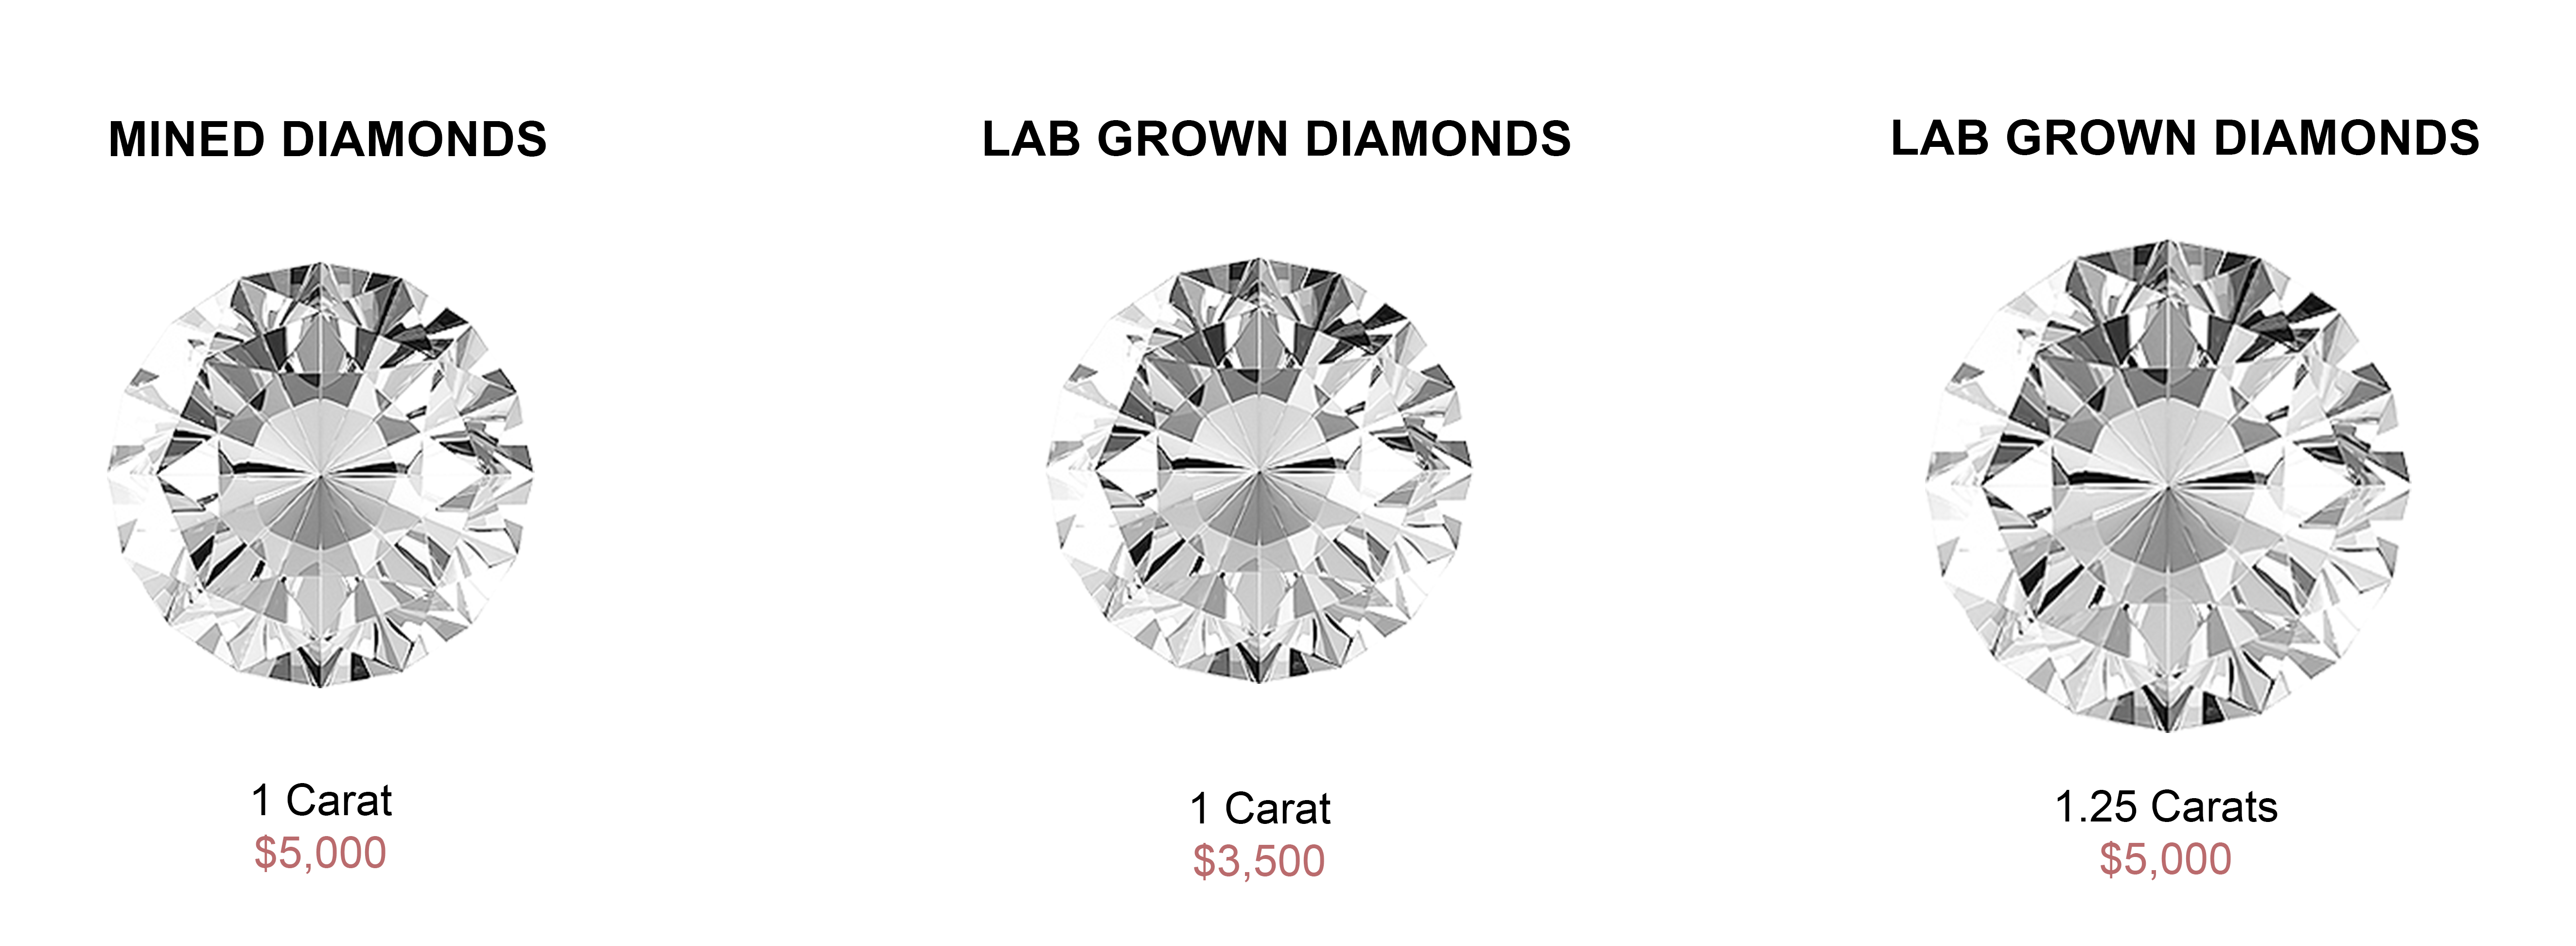 Lab-grown-diamond-prices